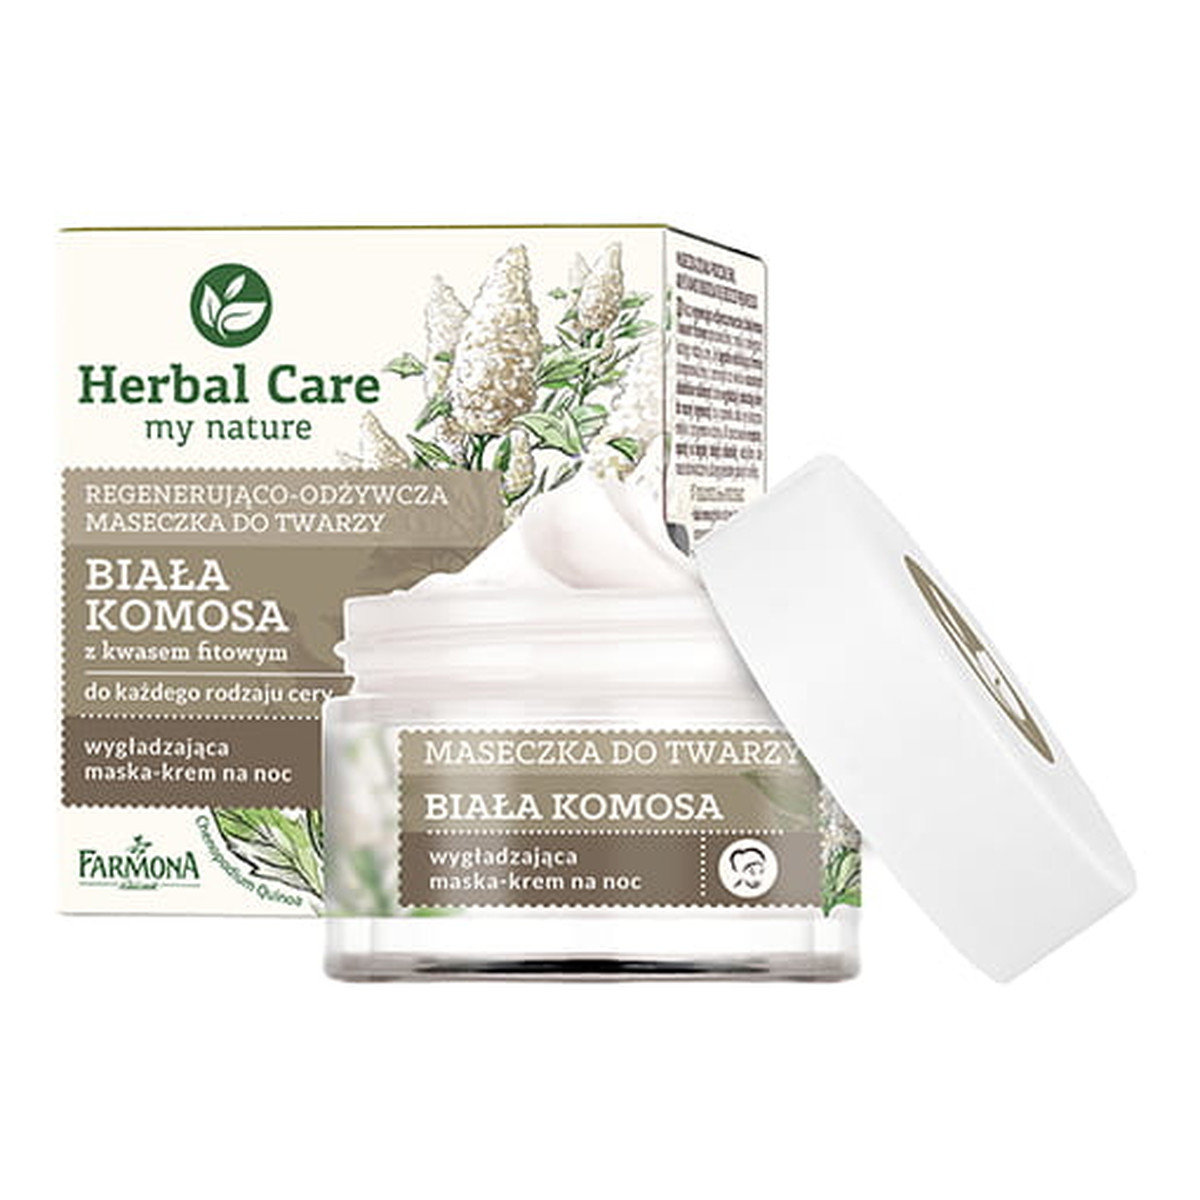 Farmona Herbal Care regenerująco-odżywcza maseczka do twarzy Biała Komosa 50ml